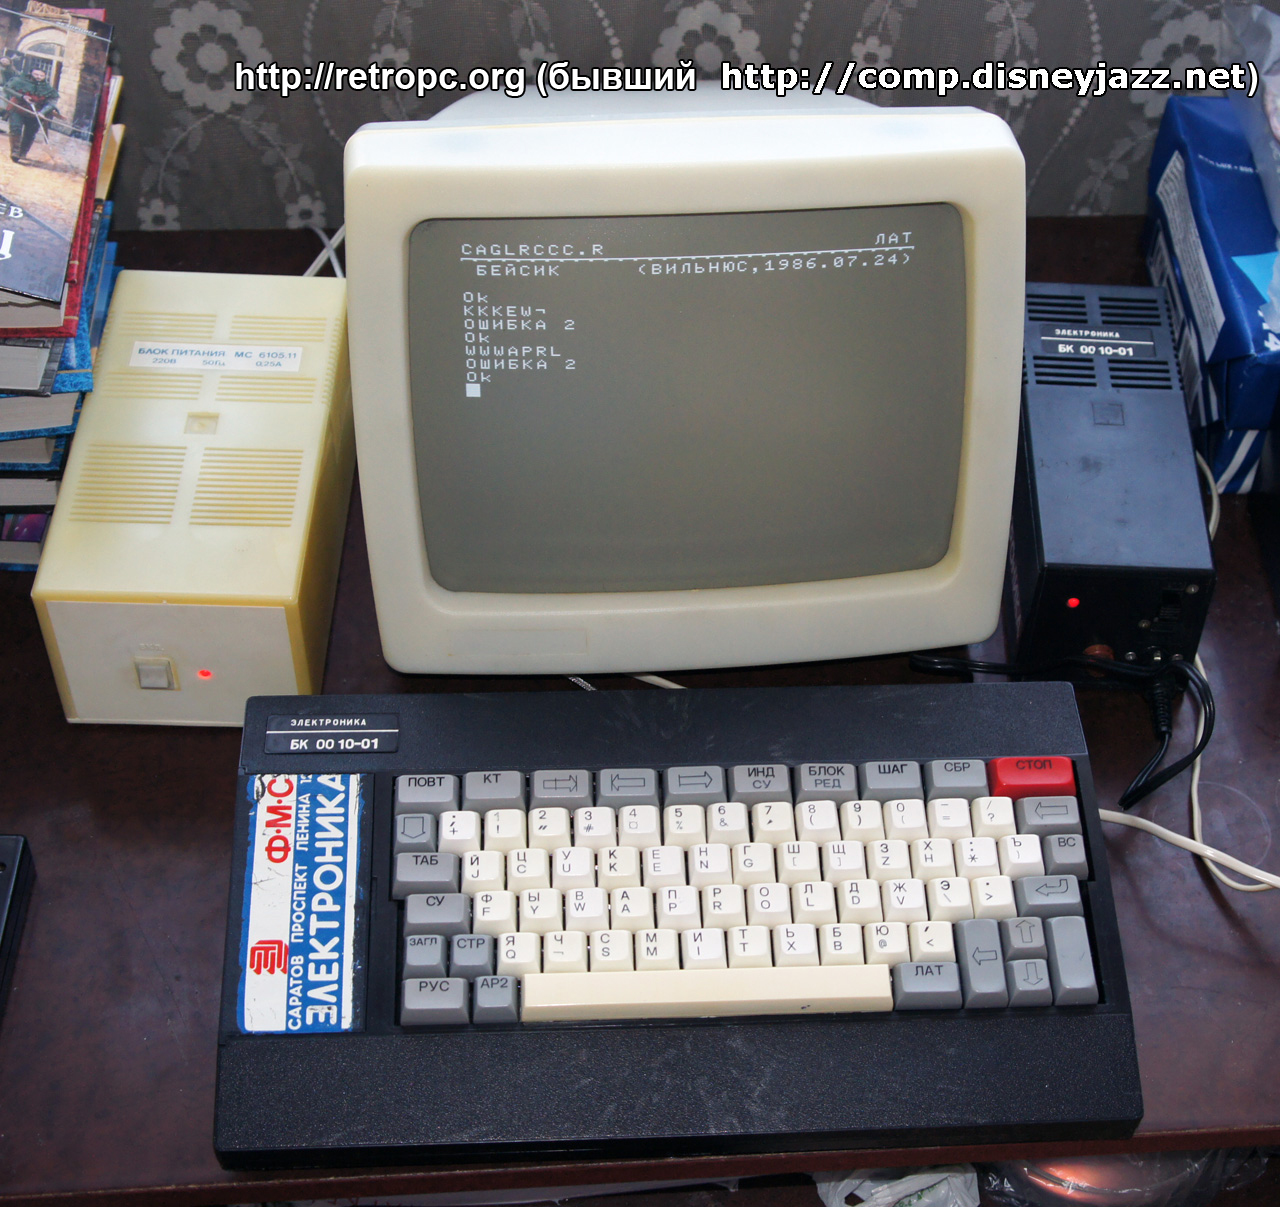 Запущенный компьютер компьютер БК 0010-01 с Бейском